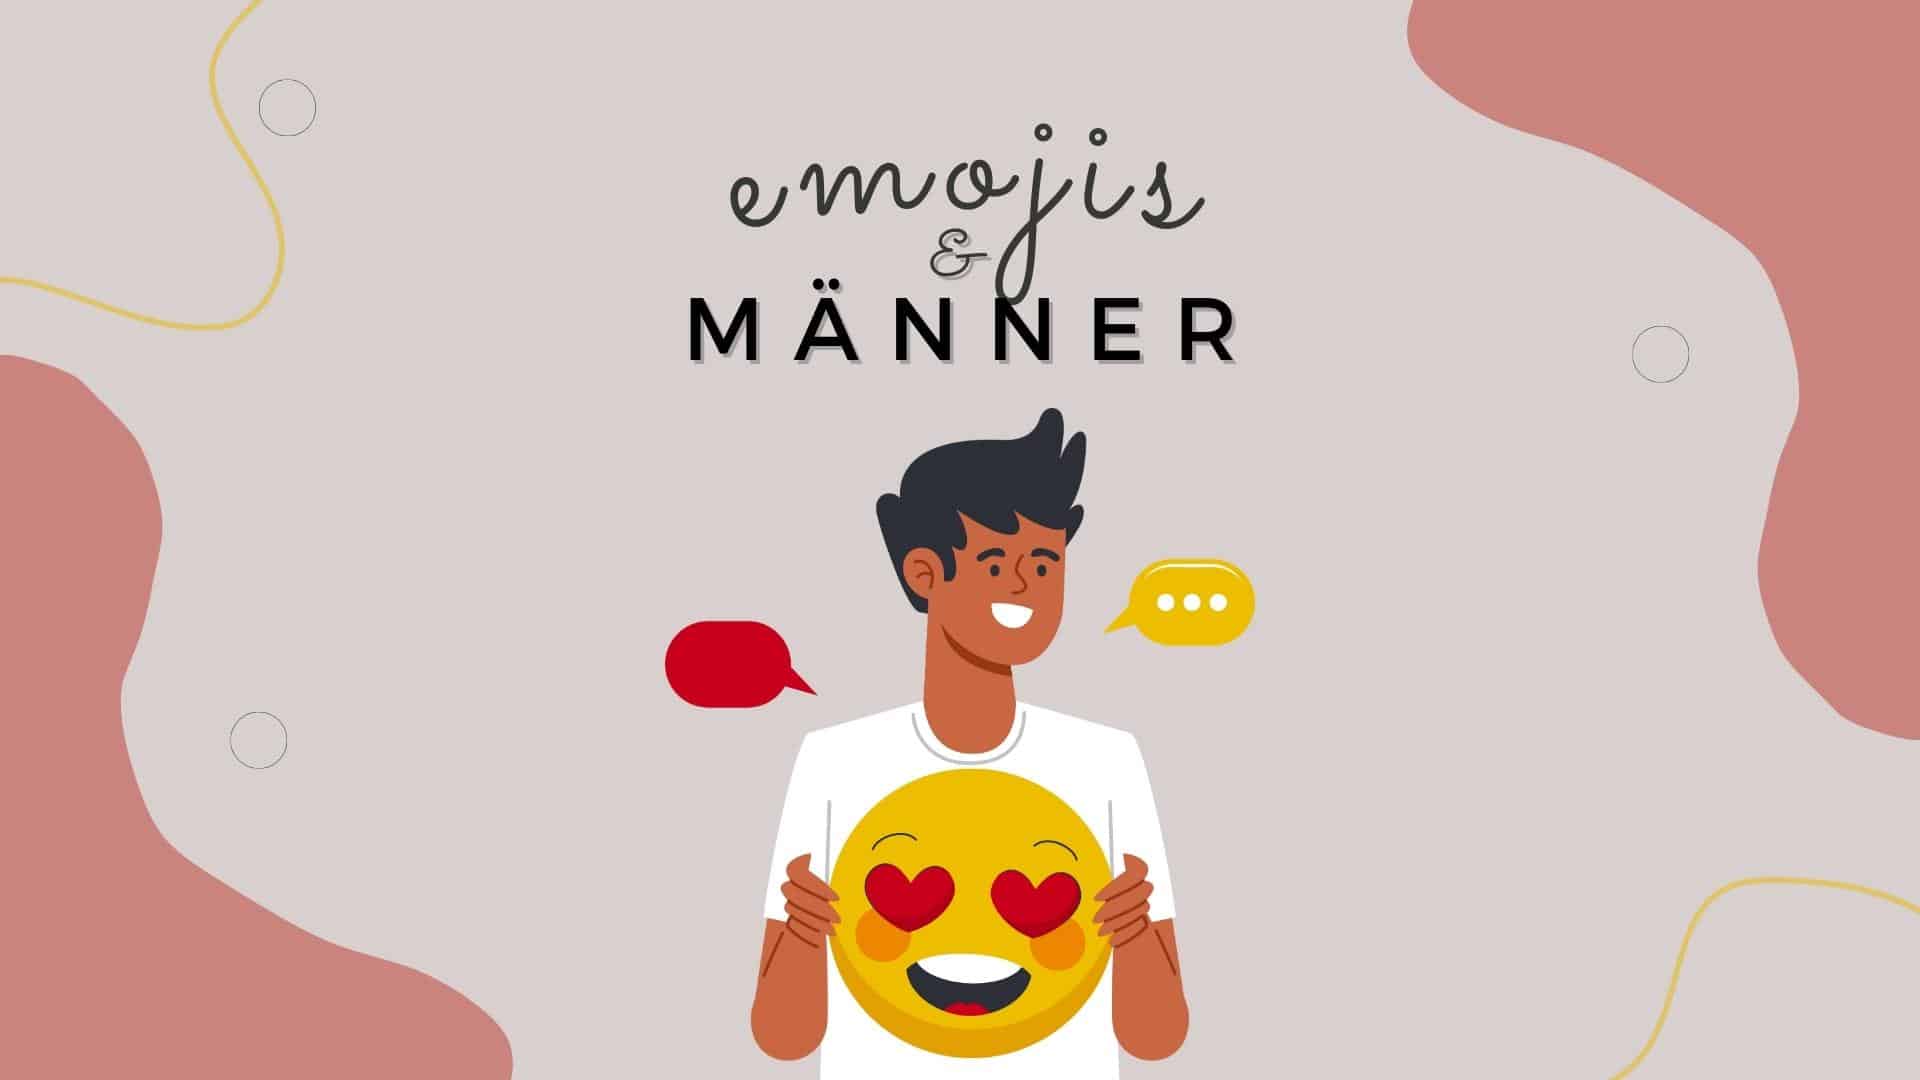 Männer und Emojis: Bedeutung hinter virtuellen Gesichtern